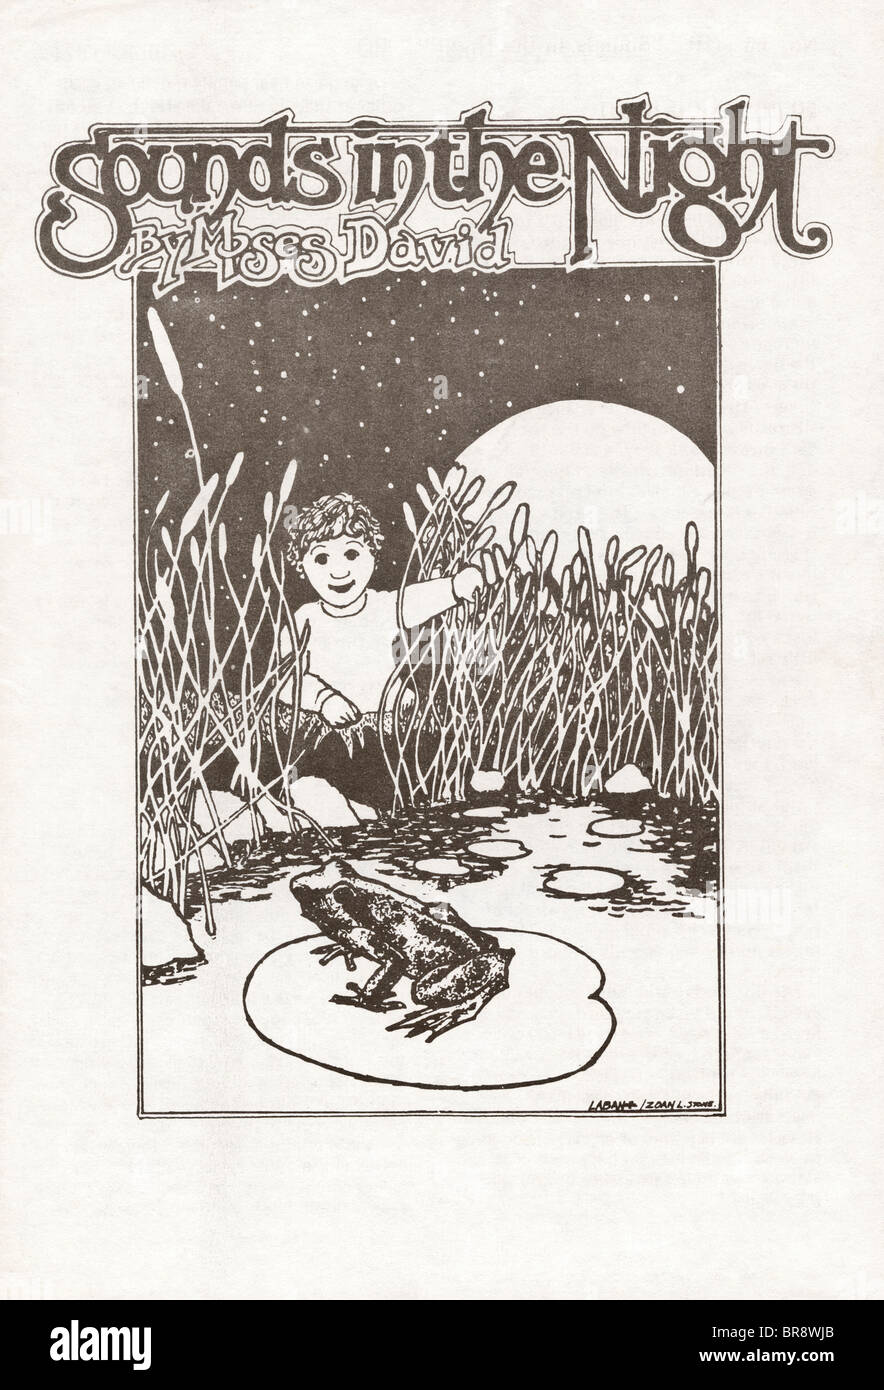 Geräusche in der Nacht von Moses David Cover der Broschüre durch die Kinder des Gottes eine religiöse Sekte ca. 1971 Stockfoto